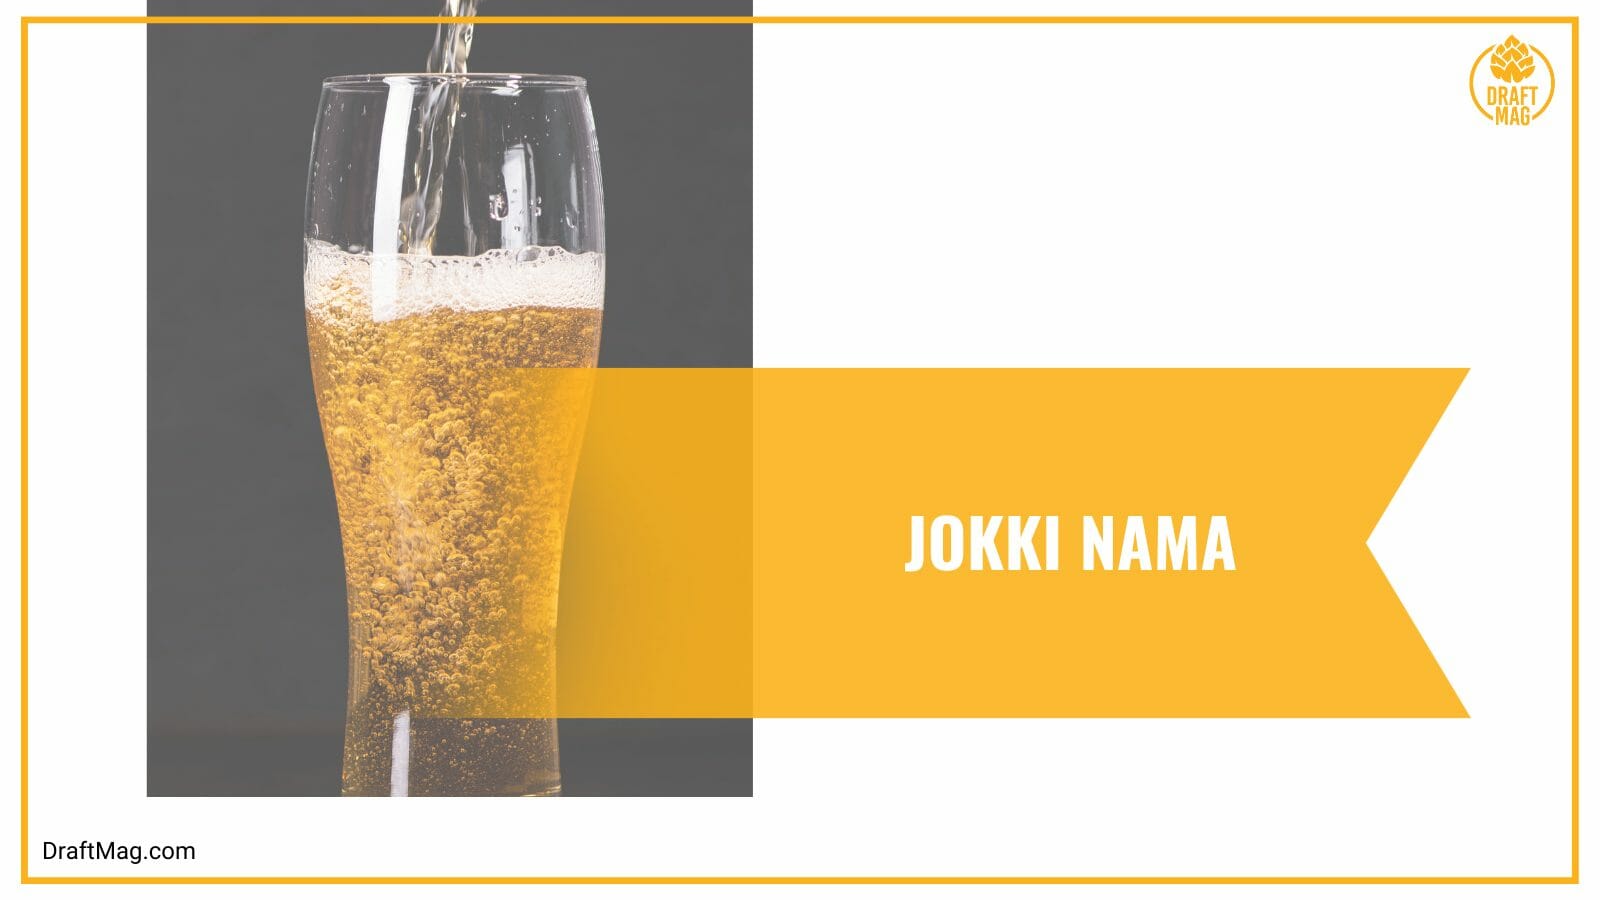 Jokki Nama the Healthier Beer